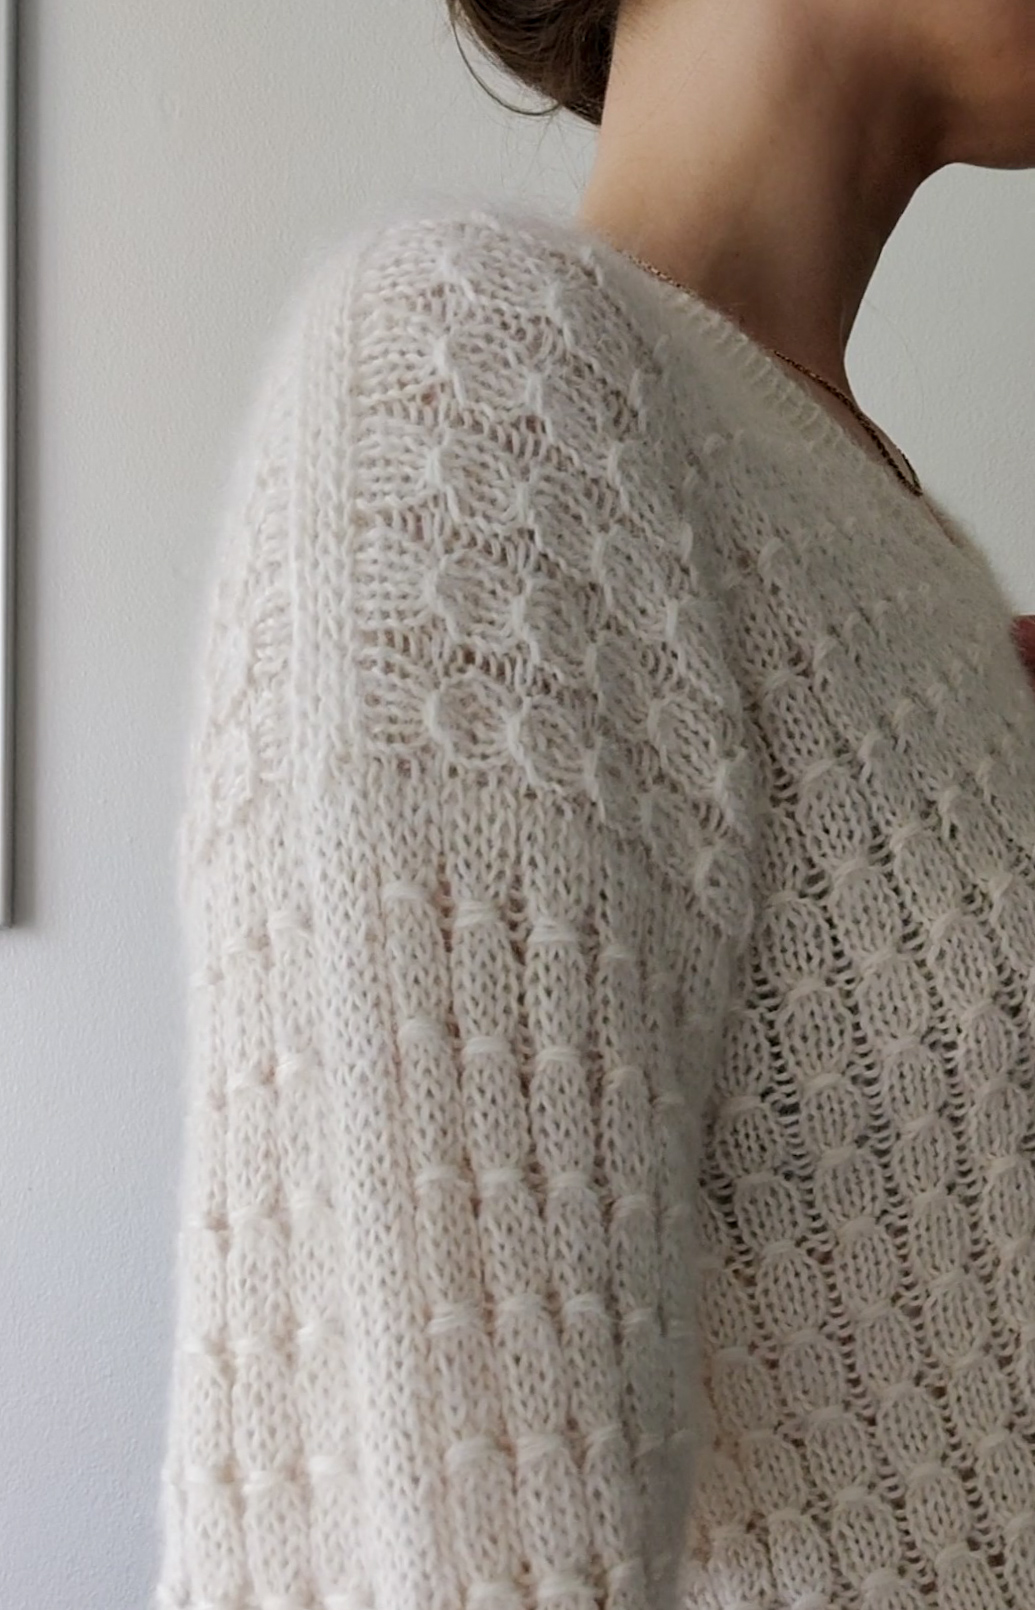 Strikkeopskrift VesterbyCrea.No.16 | V-hals sweater med smock mønster